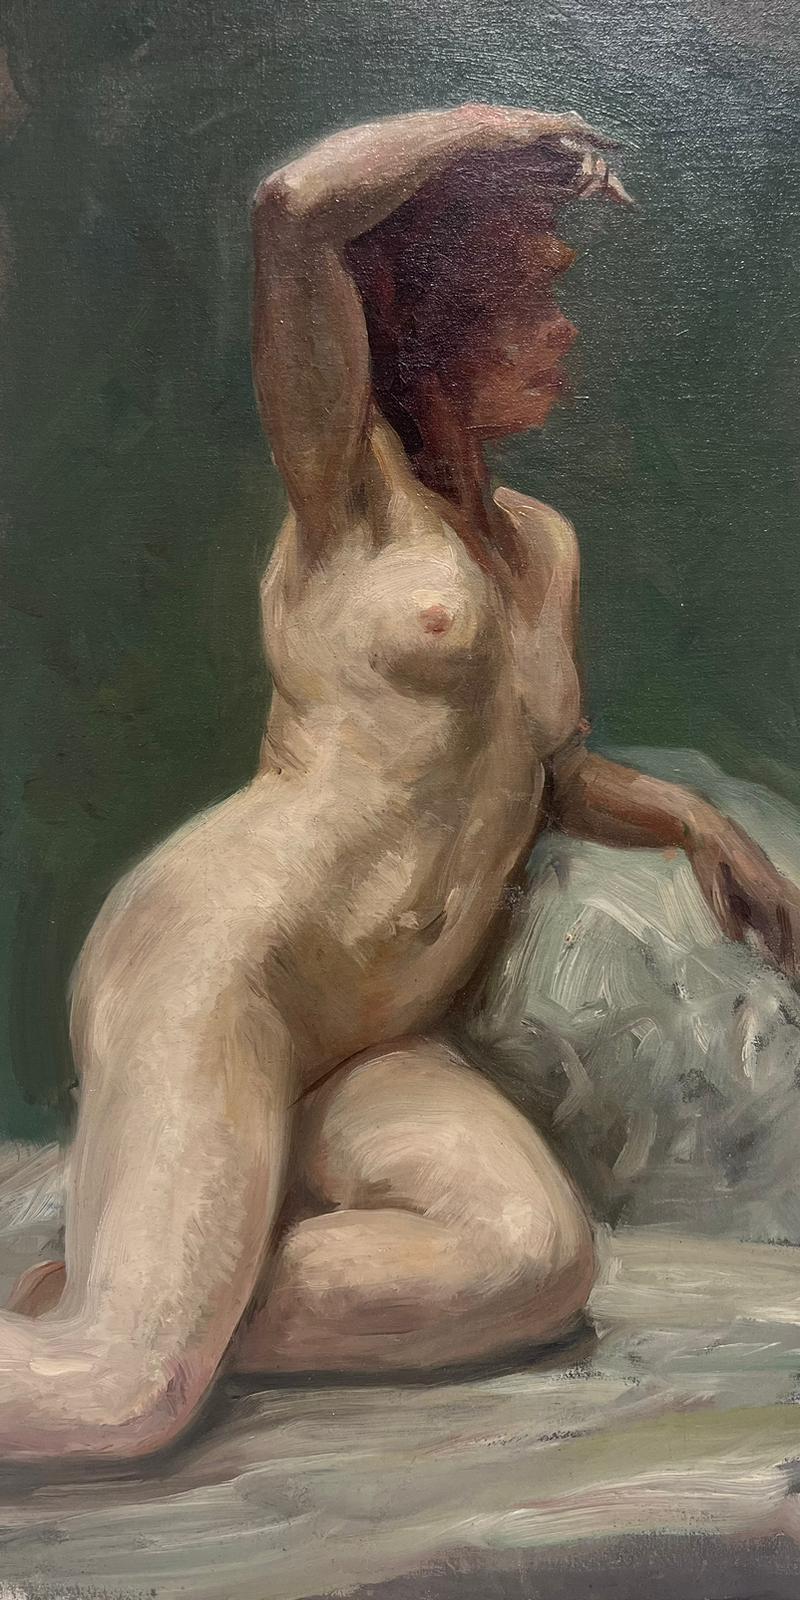 Peinture à l'huile impressionniste française des années 1890, Studio A, portrait d'une femme modèle nue - Painting de French Impressionist oil